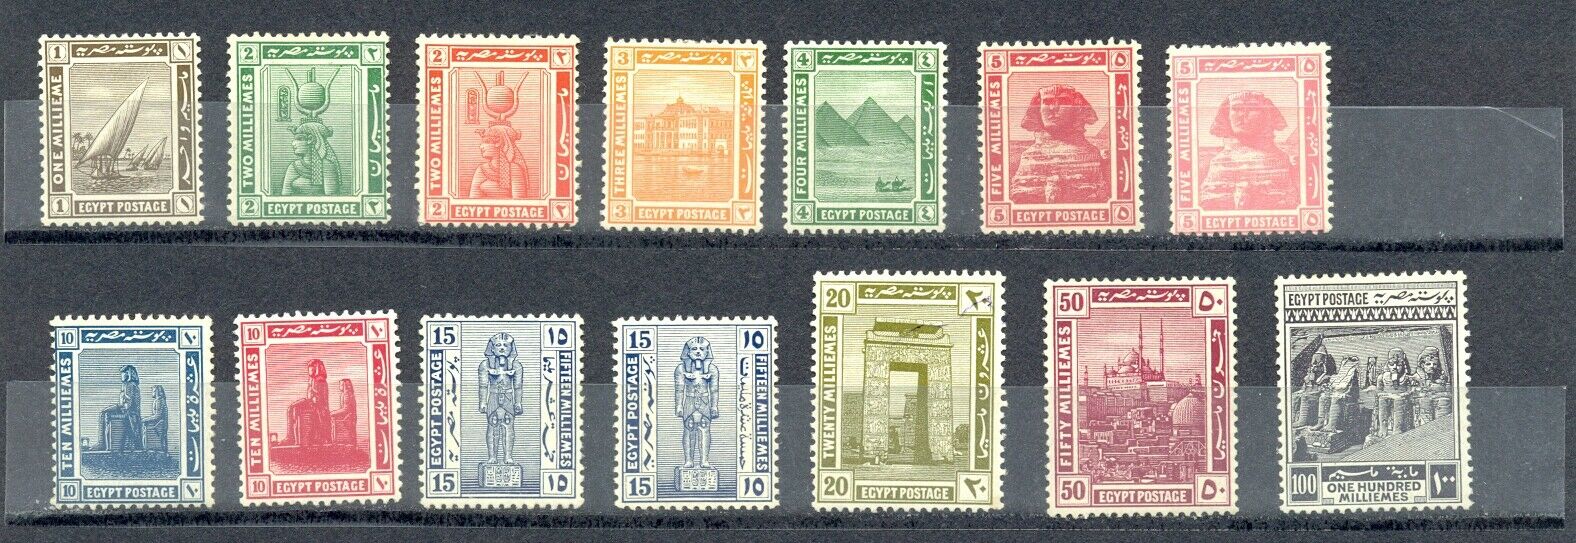 stamp Egypt 1921.jpg